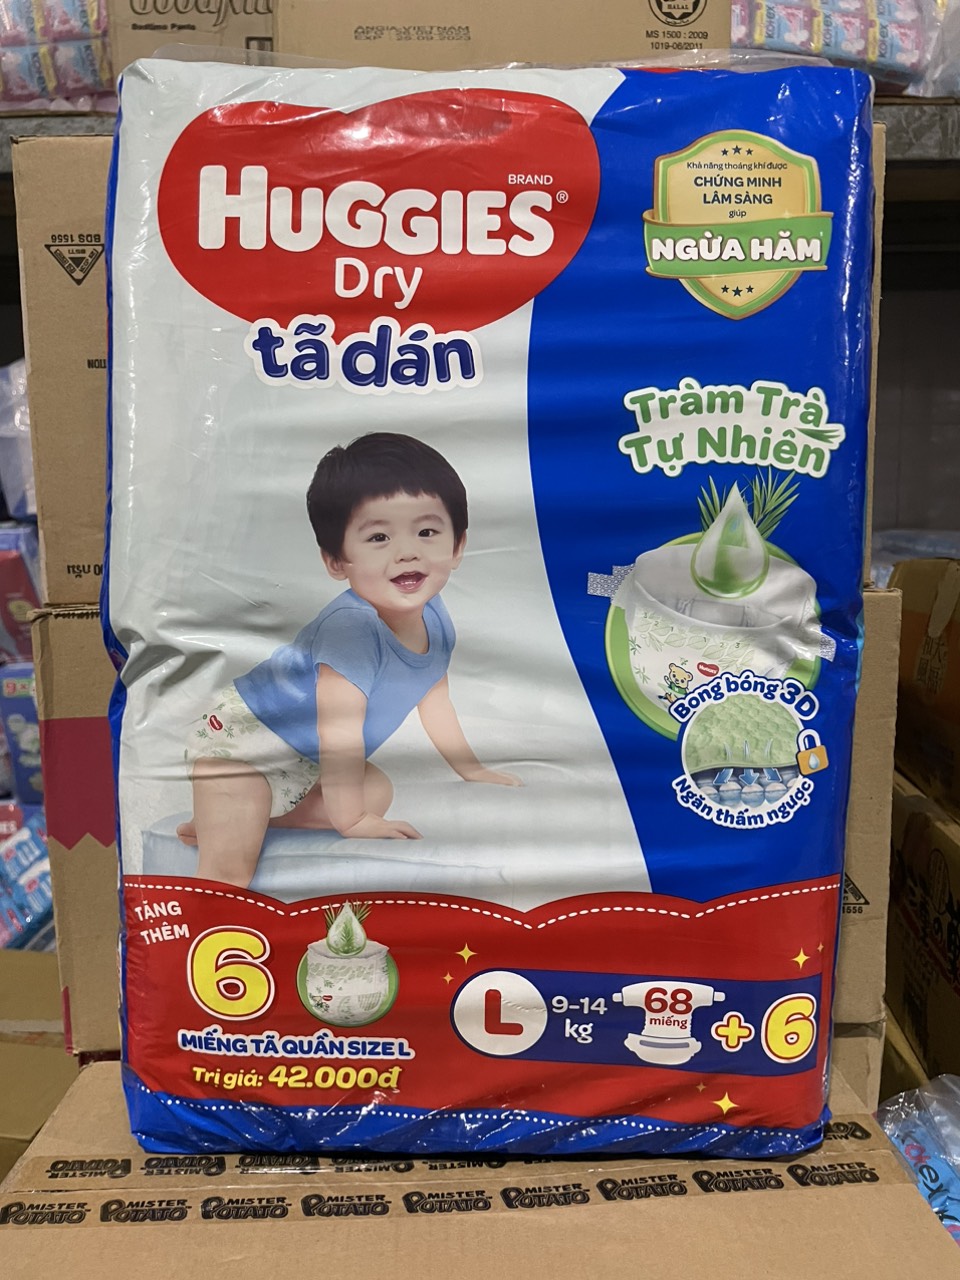 Tã dán Huggies Dry cỡ L 68 miếng+6 9-14kg